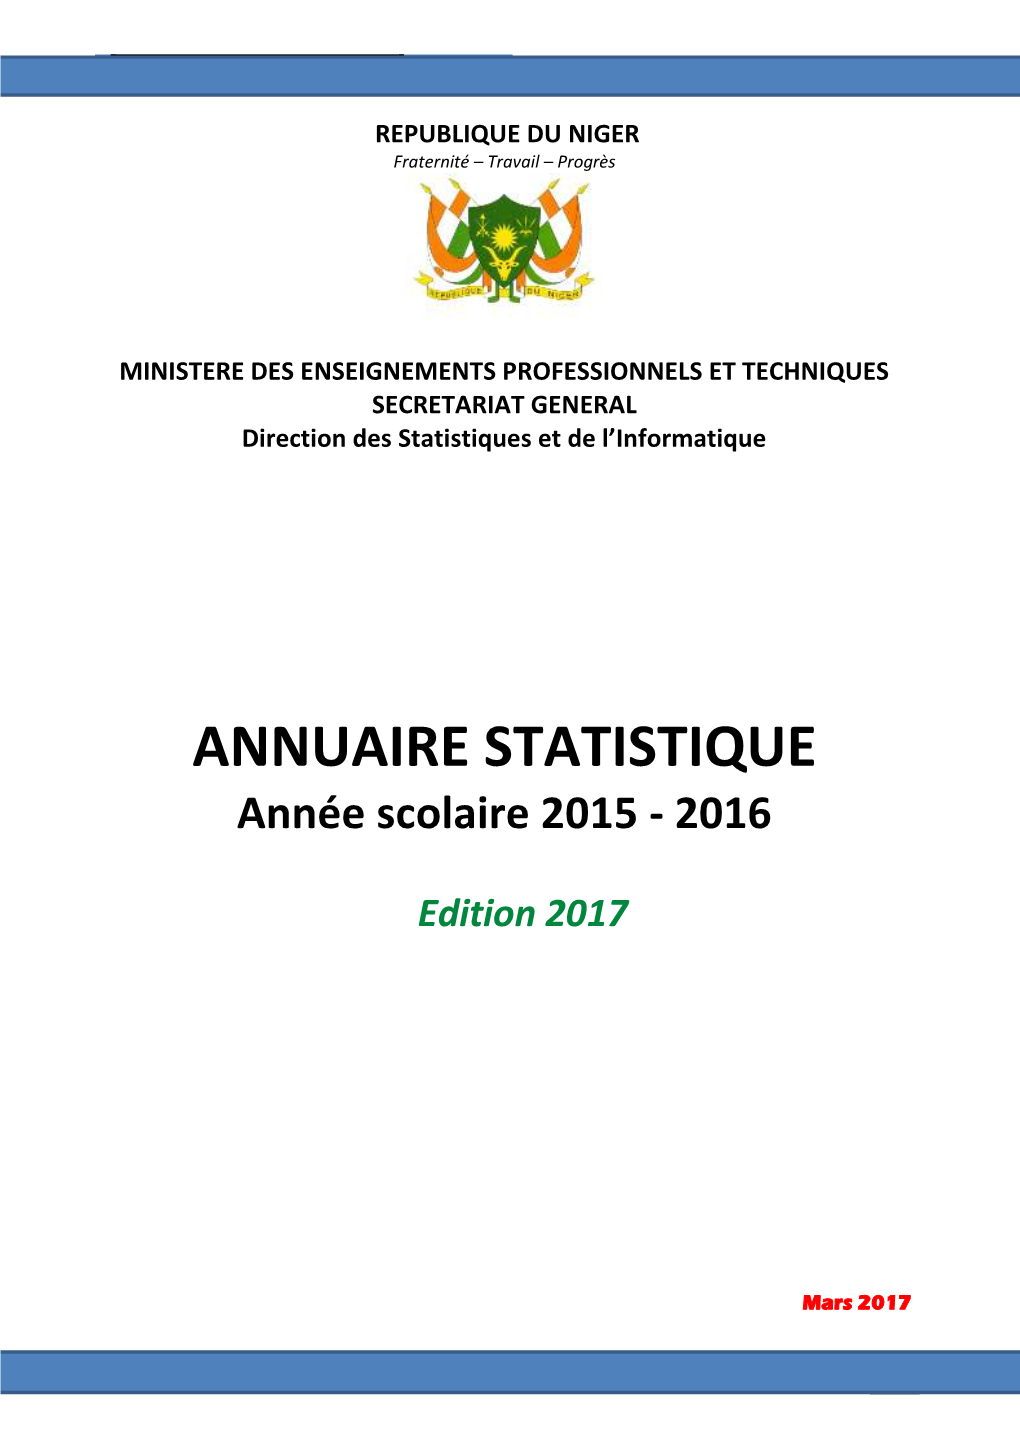 ANNUAIRE STATISTIQUE 2015-201Troisième6 Trimestre 2 MINISTERE DES ENSEIGNEMENTS PROFESSIONNELS ET TECHNIQUES